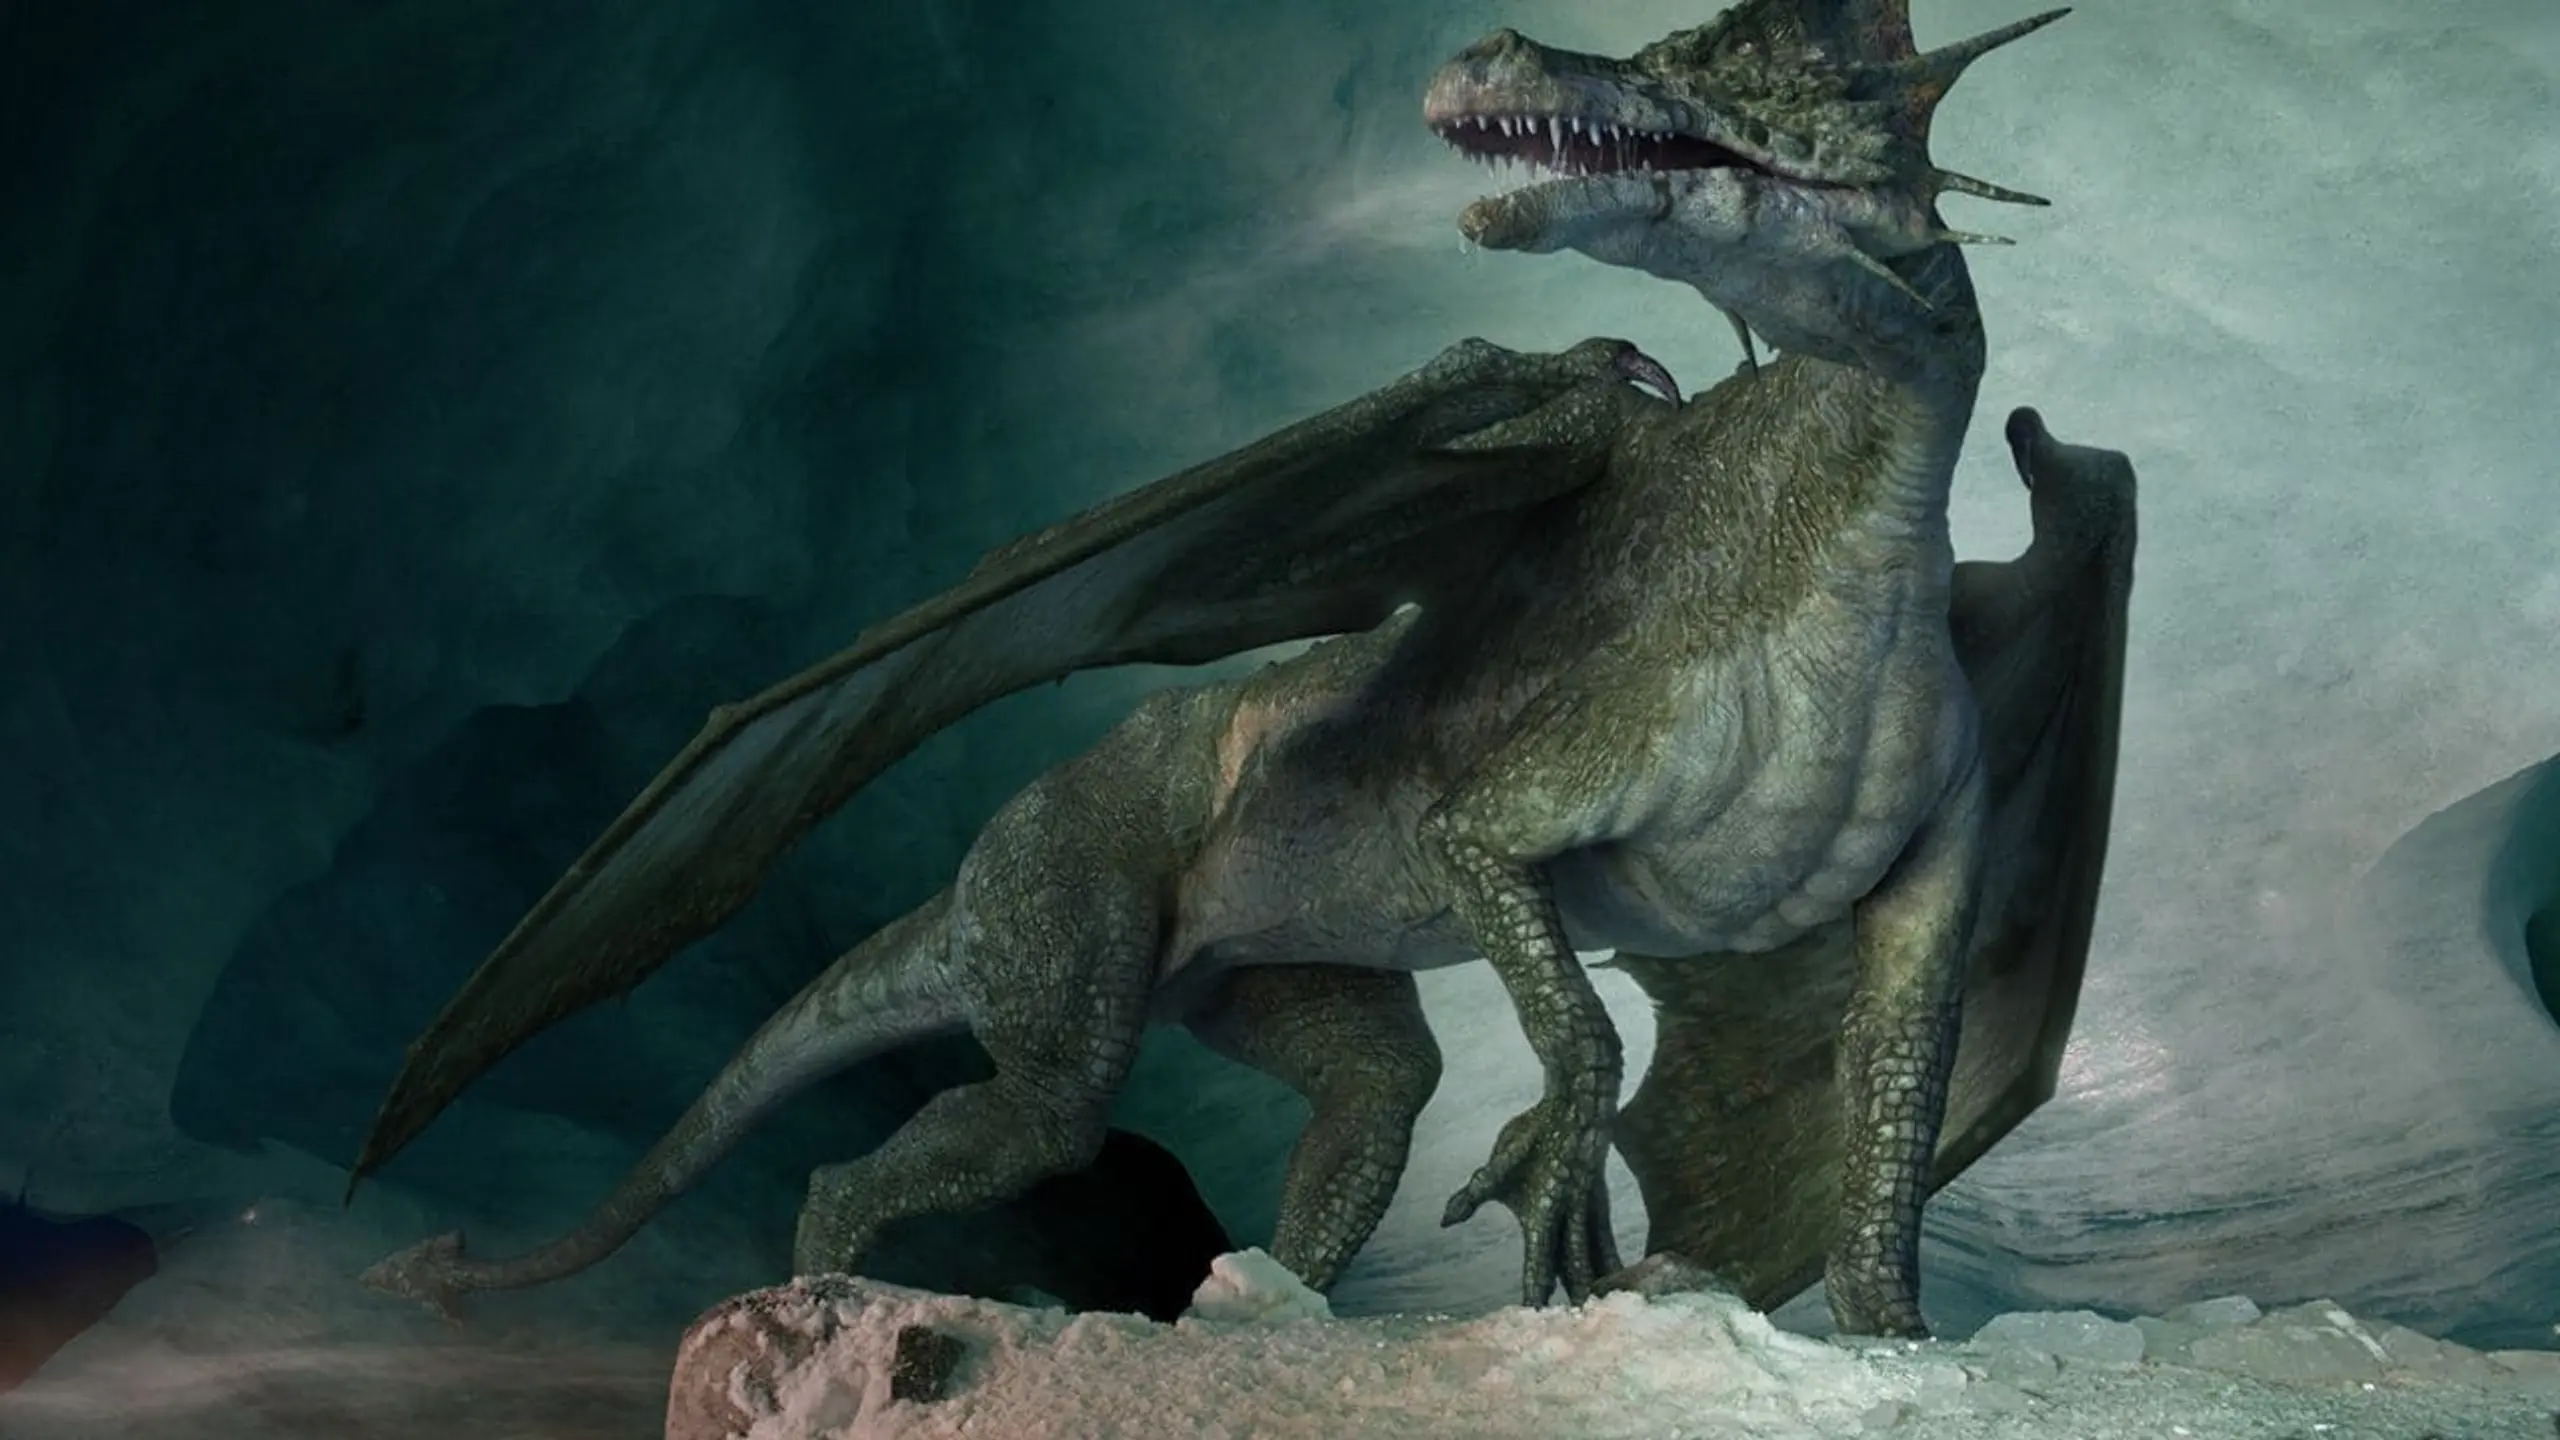 Dragon's World - Unglaubliche Entdeckung im Reich der Drachen